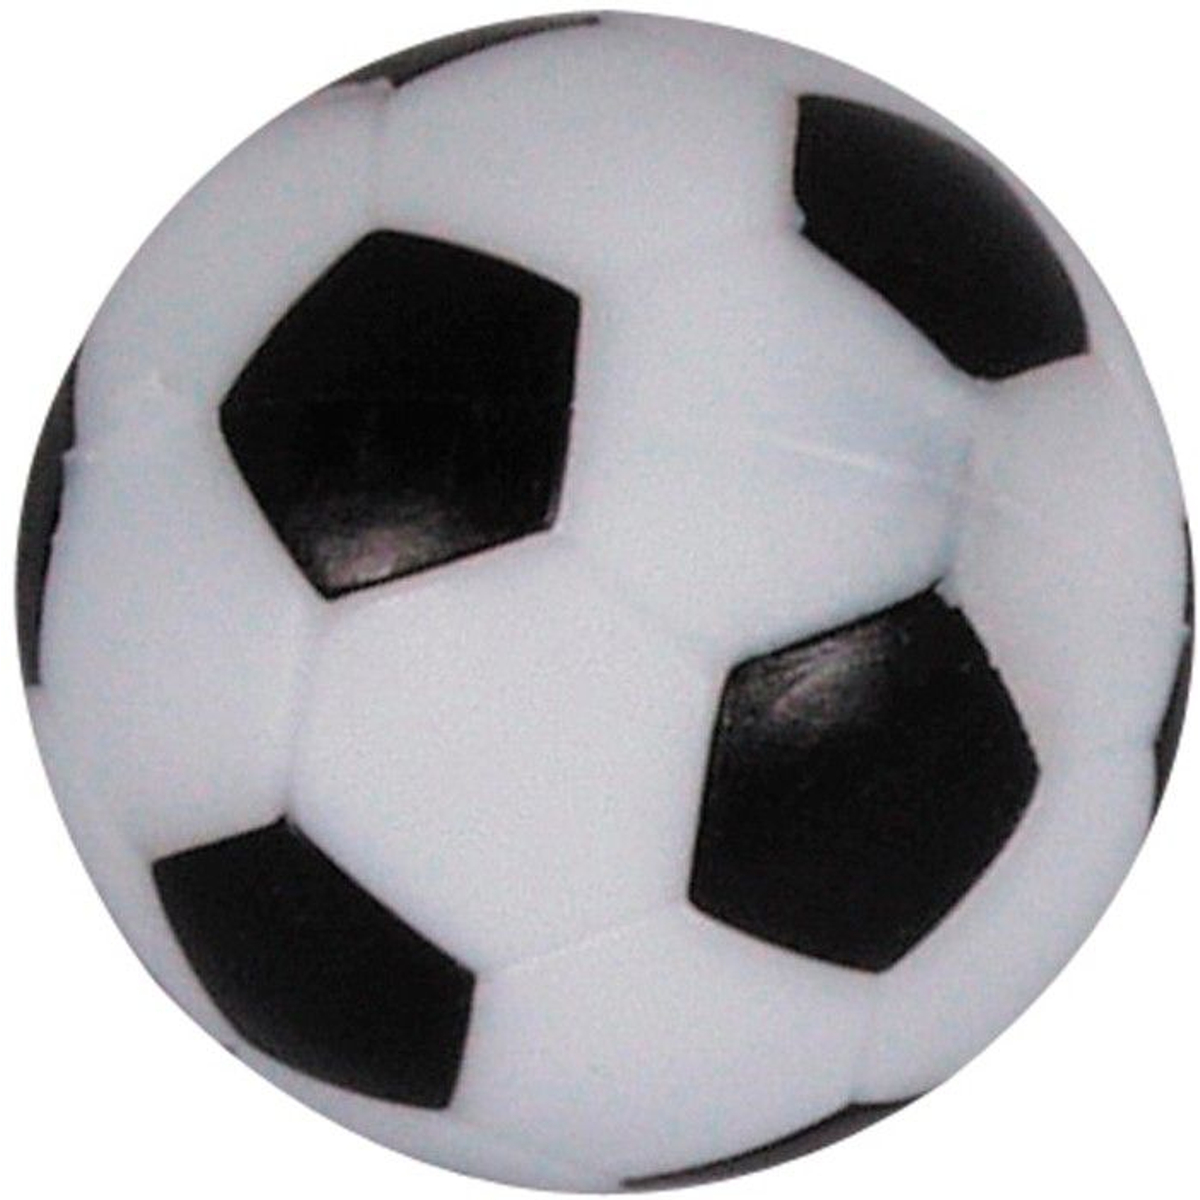 Tafelvoetbal voetballetjes zwart/wit met profiel